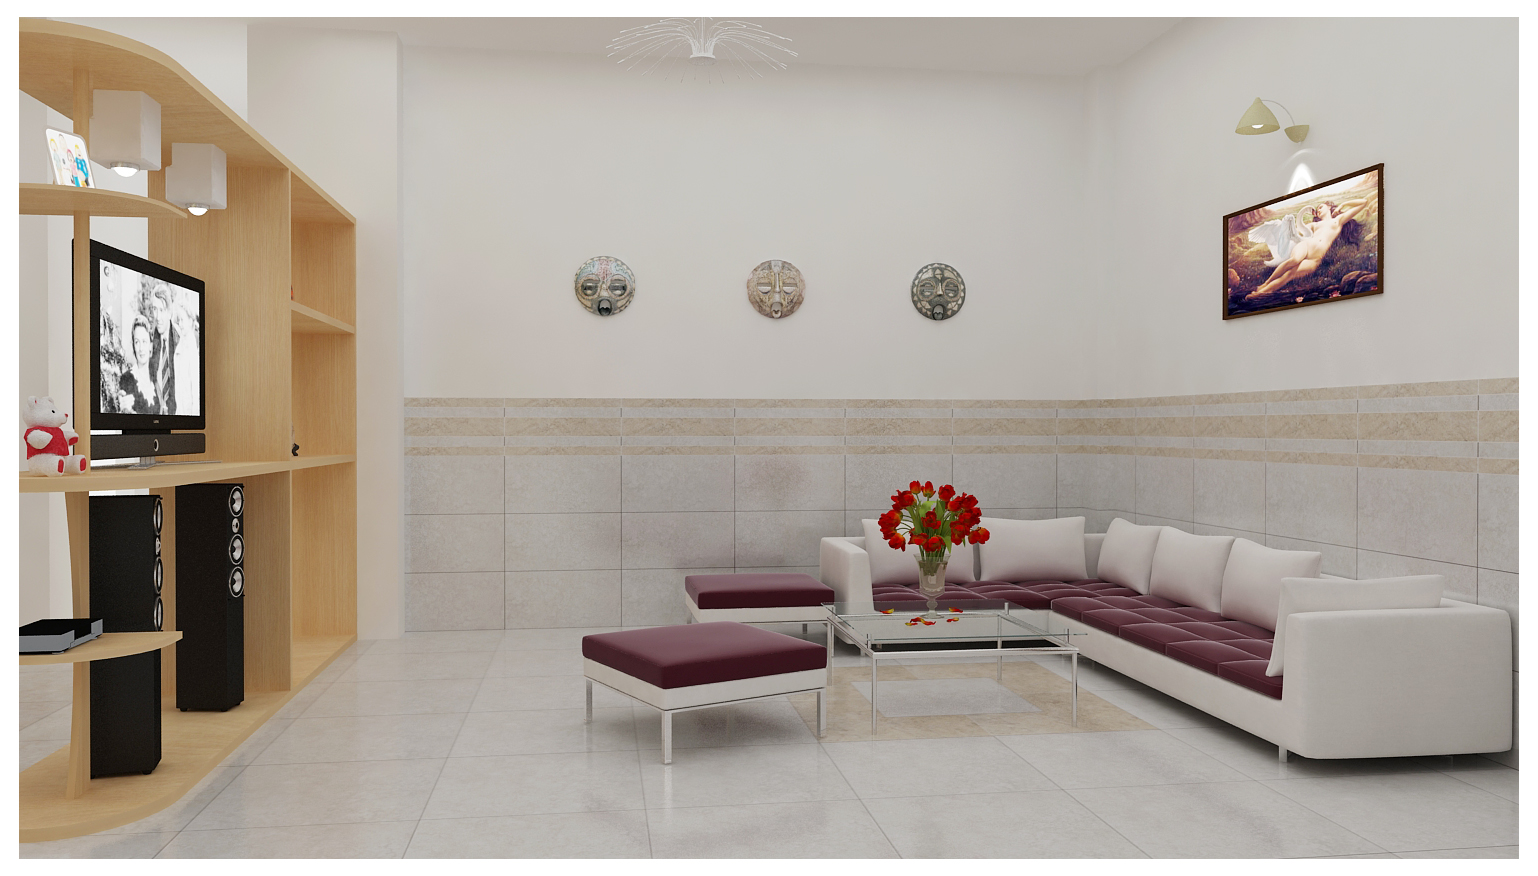 Gạch ốp tường phòng khách sang trọng 2024:
Năm 2024, xu hướng trang trí phòng khách sang trọng trở lại với nhiều mẫu gạch ốp tường đầy đẳng cấp của Mikado. Với chất lượng và màu sắc tuyệt vời, Mikado sẽ mang đến cho bạn một phòng khách thượng lưu và quý phái. Hãy xem thêm tại hình ảnh được cung cấp.